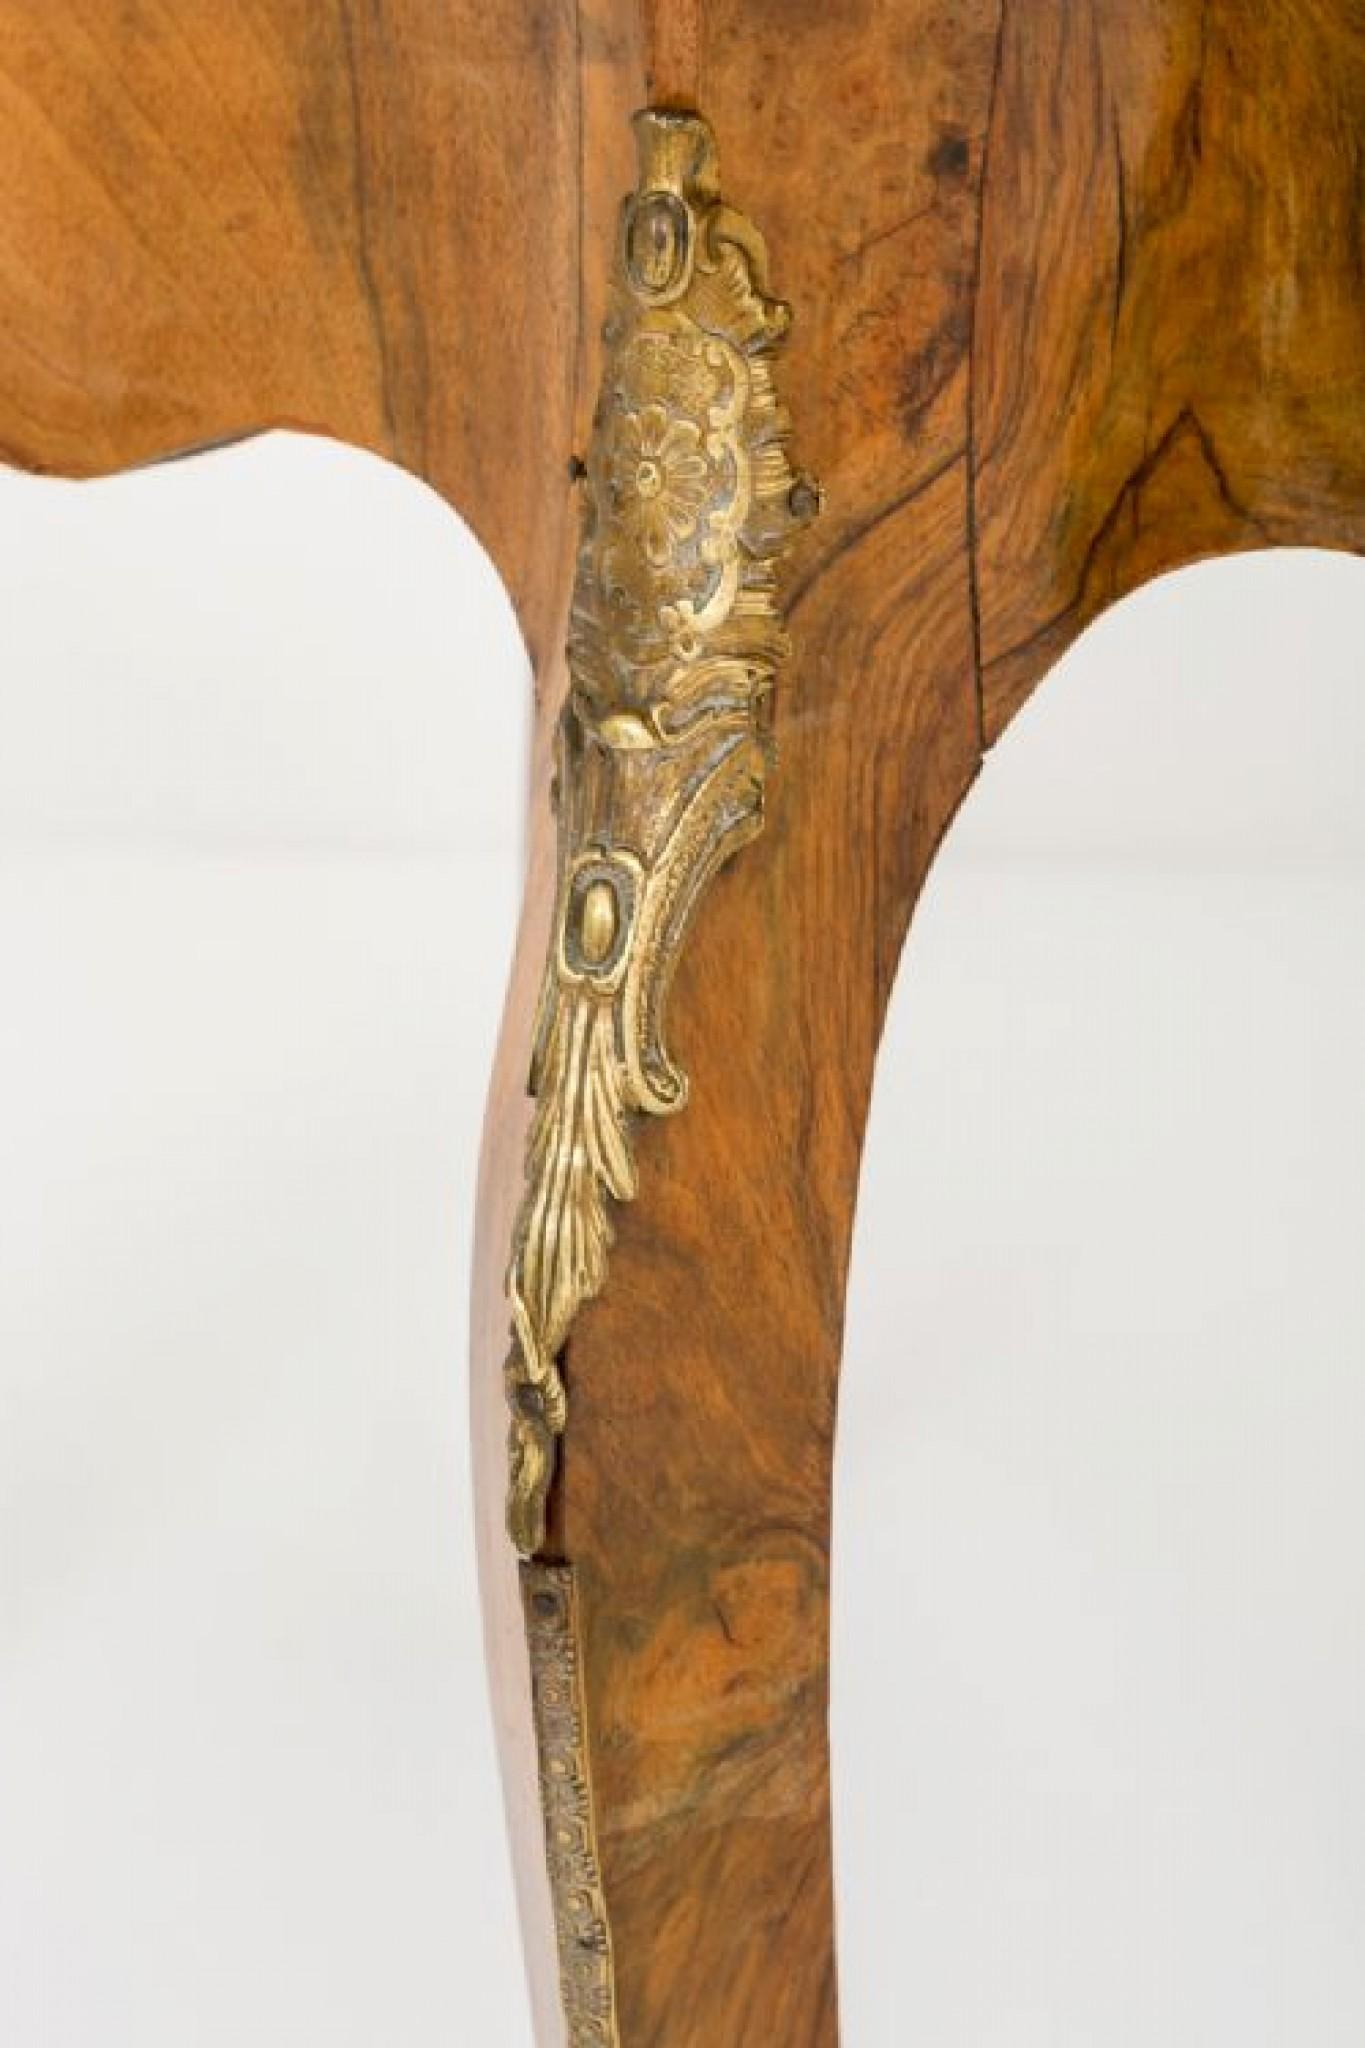 Centre Table im französischen Empire-Stil aus Wurzelnussholz.
CIRCA 1860
Steht auf geschwungenen Beinen mit vergoldeten Gussleisten.
Dieser Tisch hat 1 Schublade mit Mahagonifutter.
Die geformte Platte ist mit hochwertigem, geviertelten